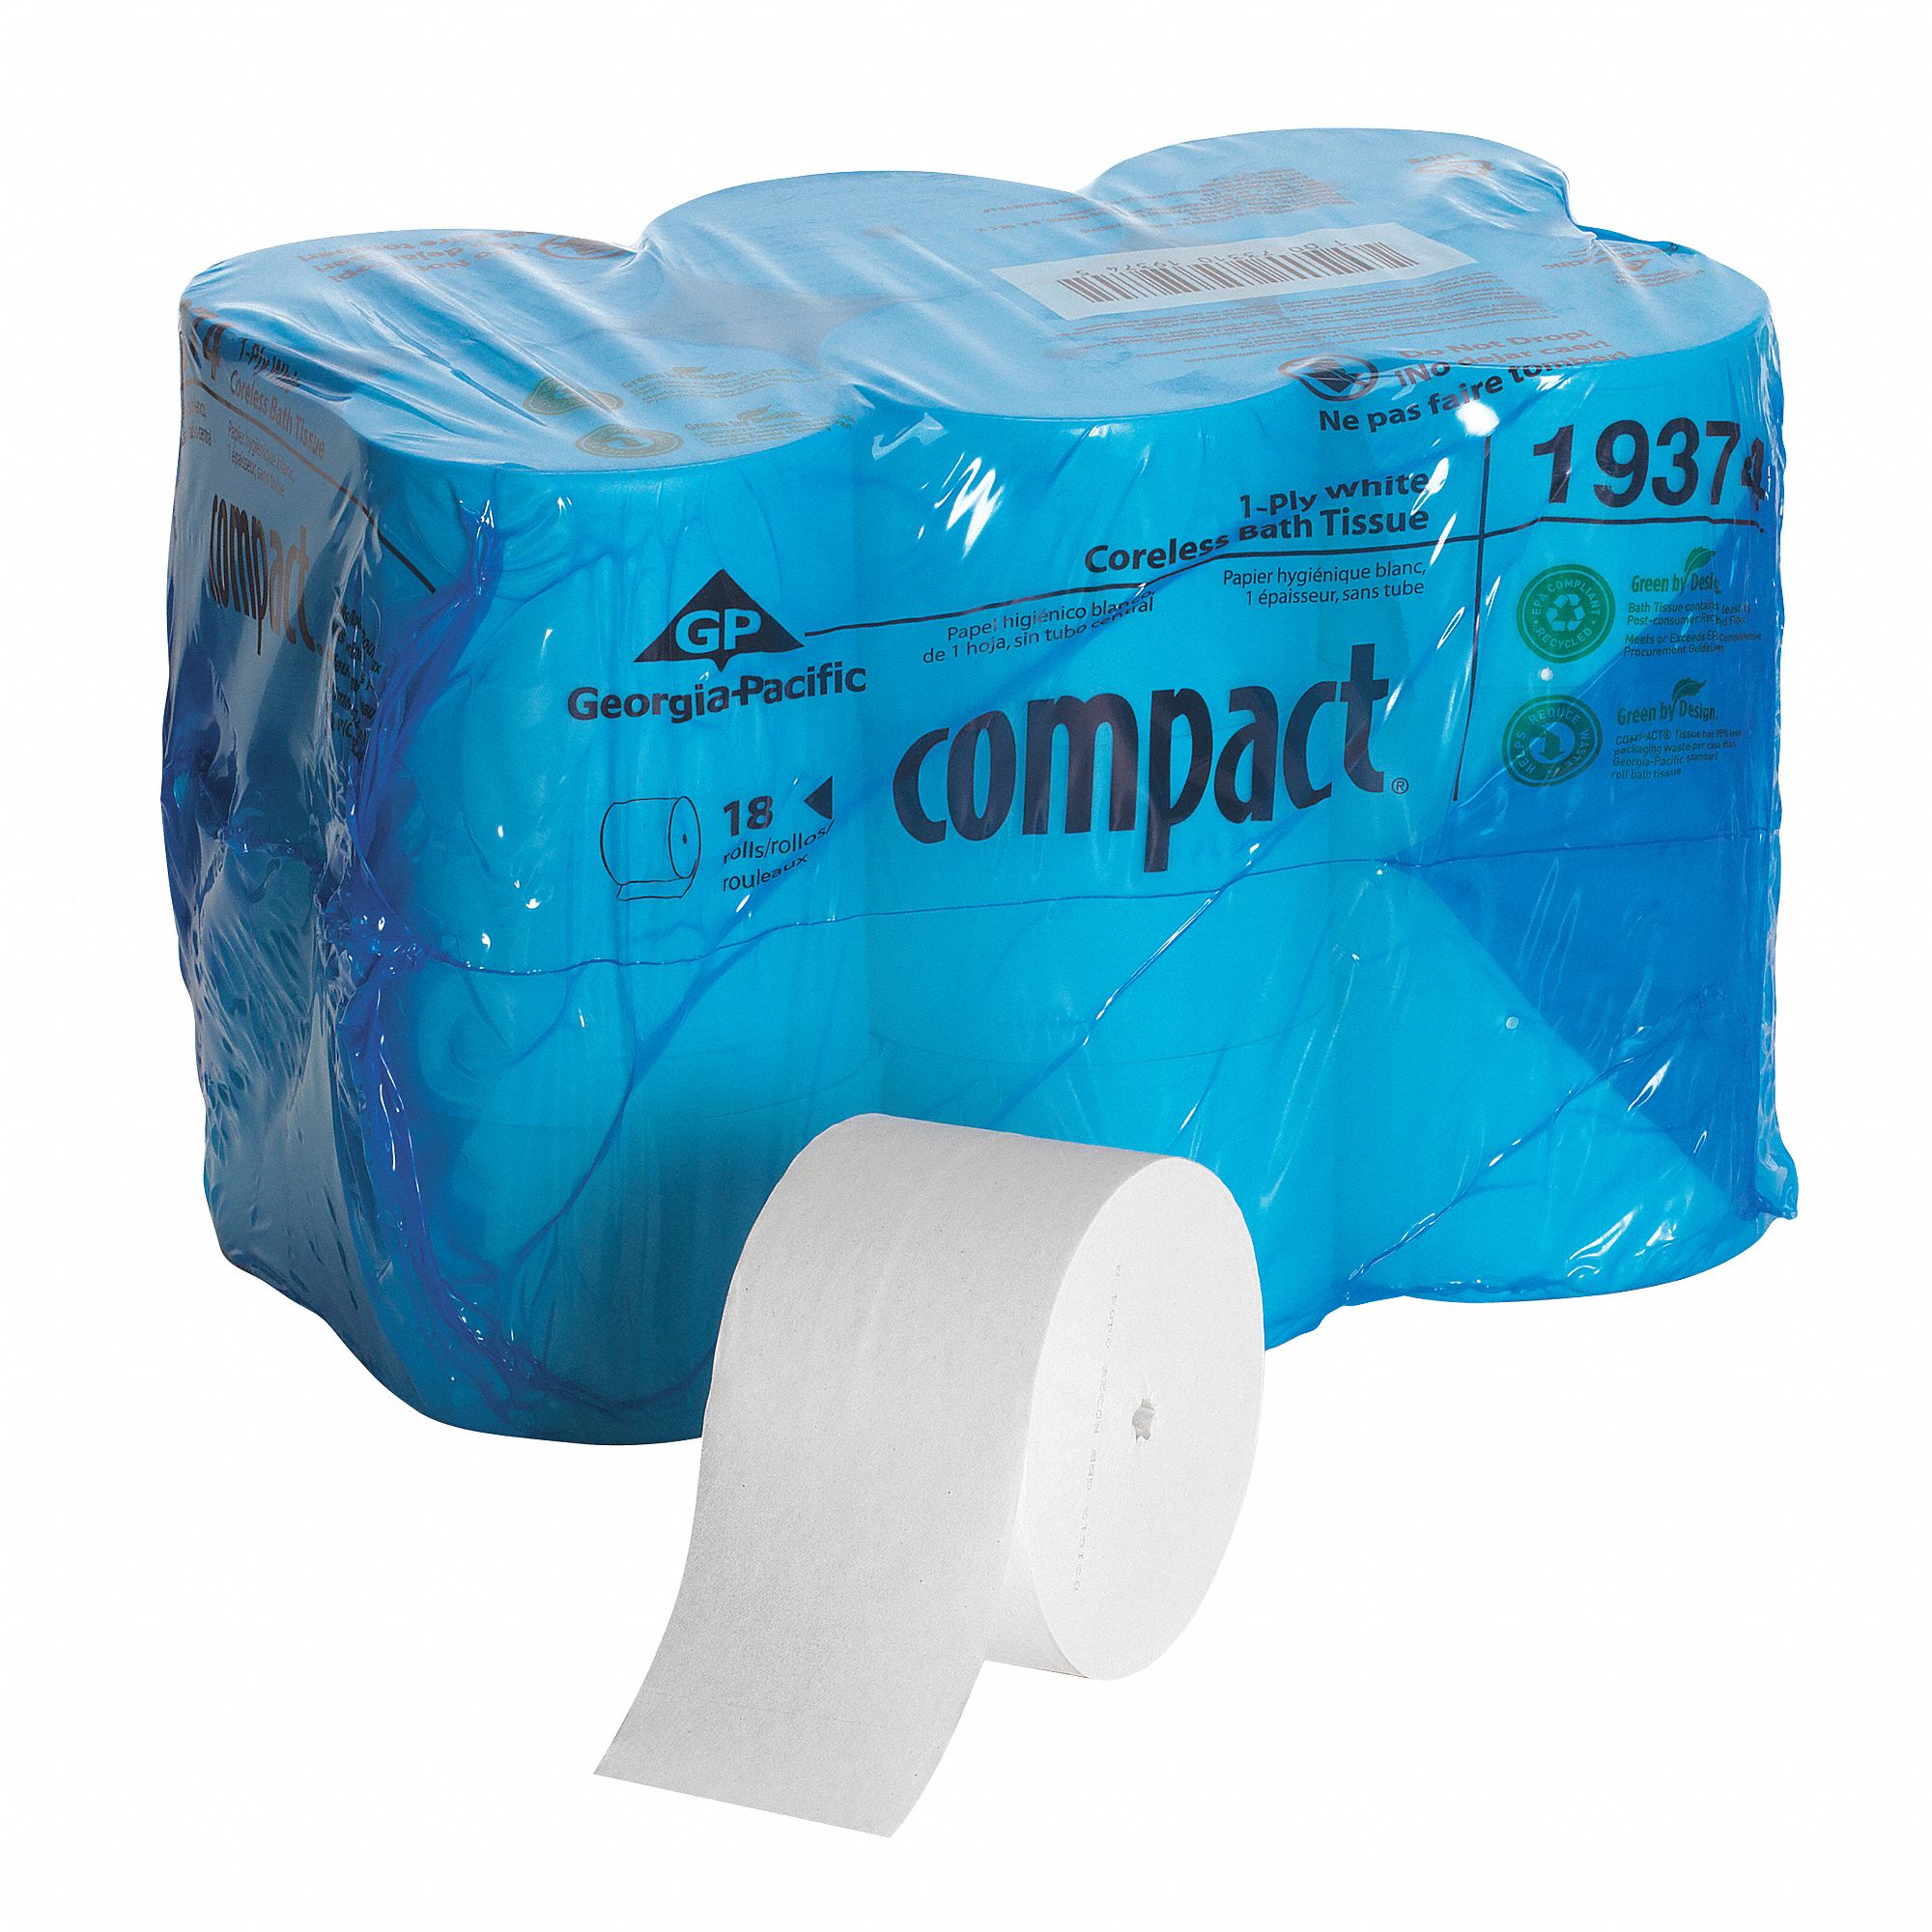 1LYJ5 - Toilet Paper Compact Coreless 1Ply PK18